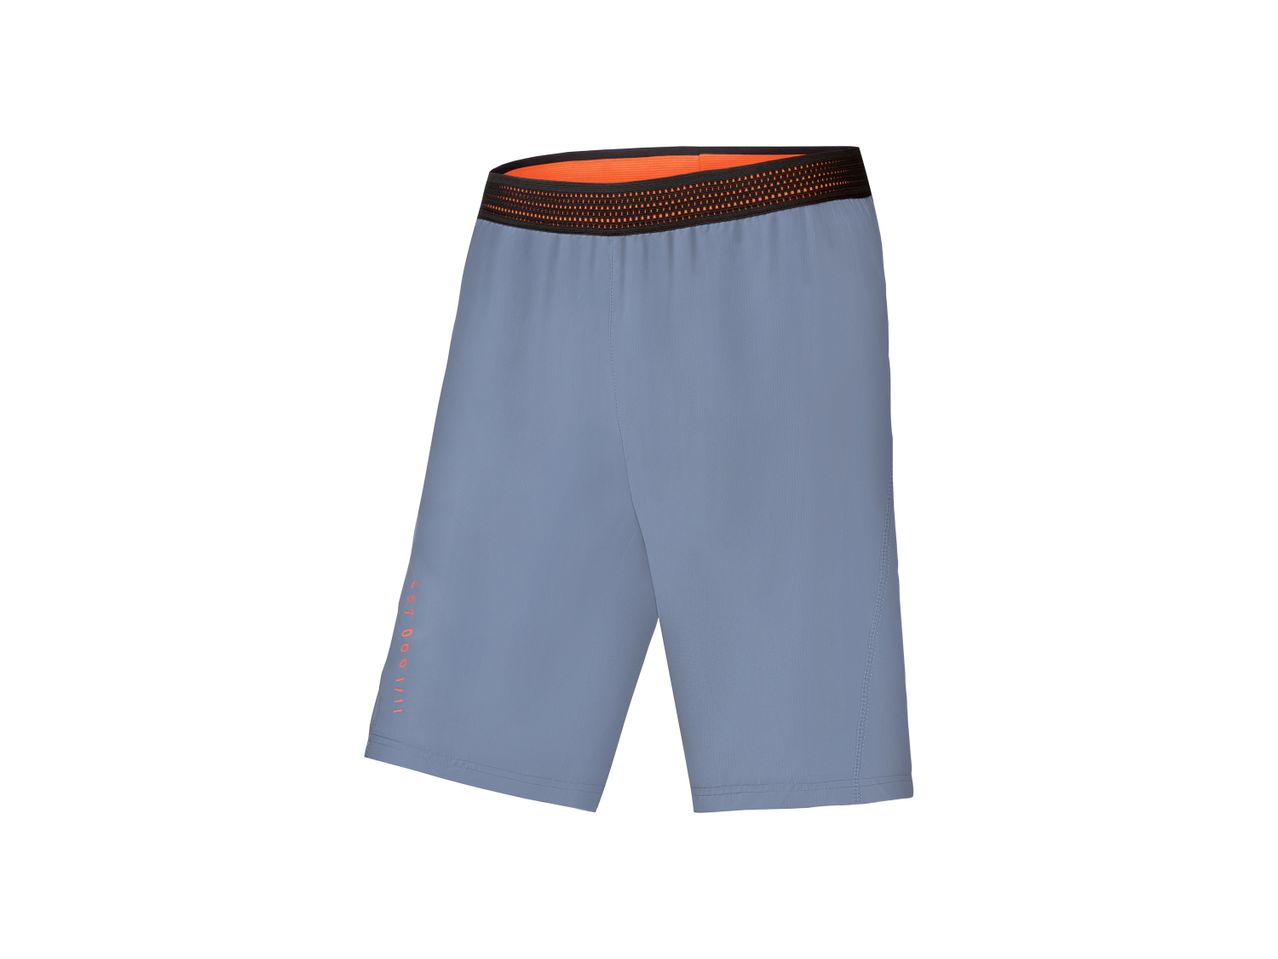 Shorts sportivi da uomo , prezzo 7.99 EUR 
Shorts sportivi da uomo Misure: S-XL ...